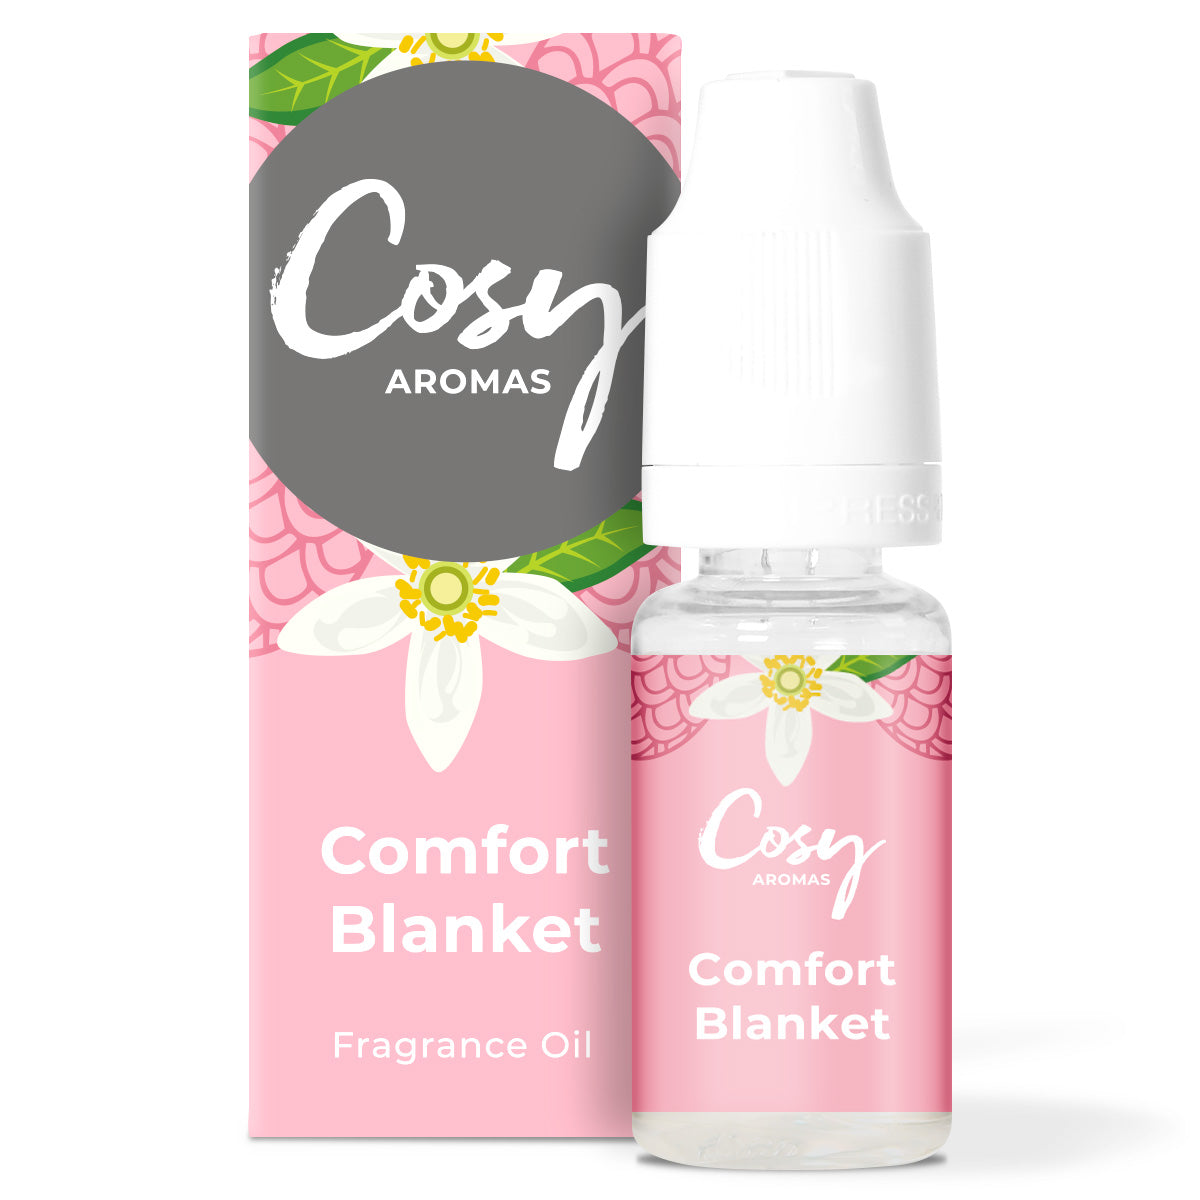 Comfort Blanket Fragrance Oil.